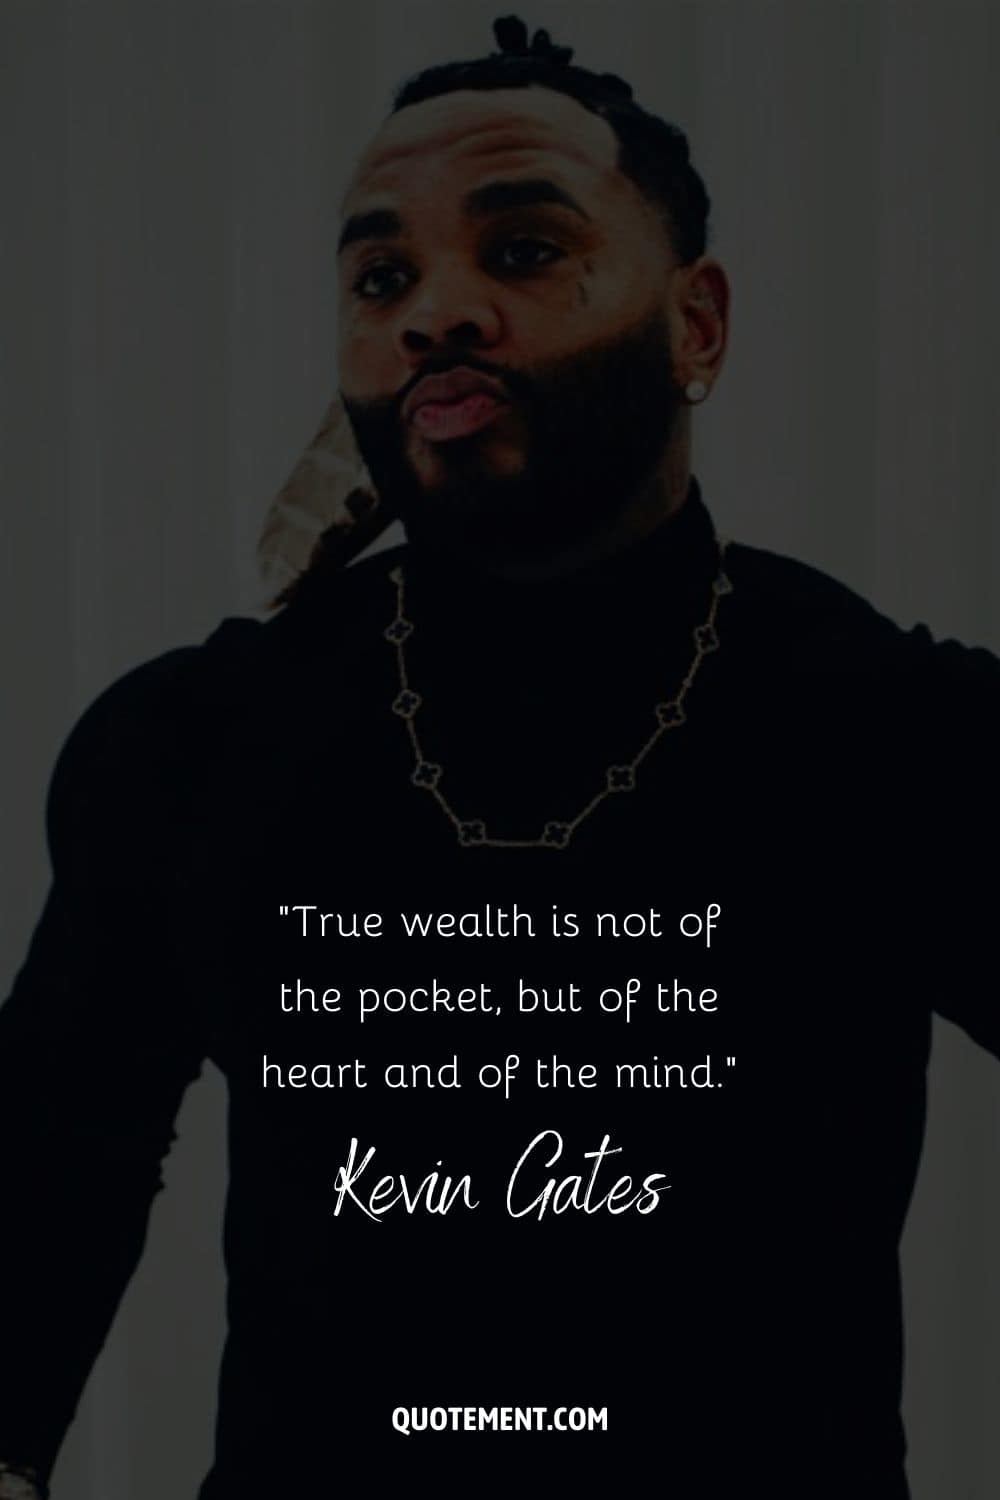 "La verdadera riqueza no es del bolsillo, sino del corazón y de la mente". - Kevin Gates